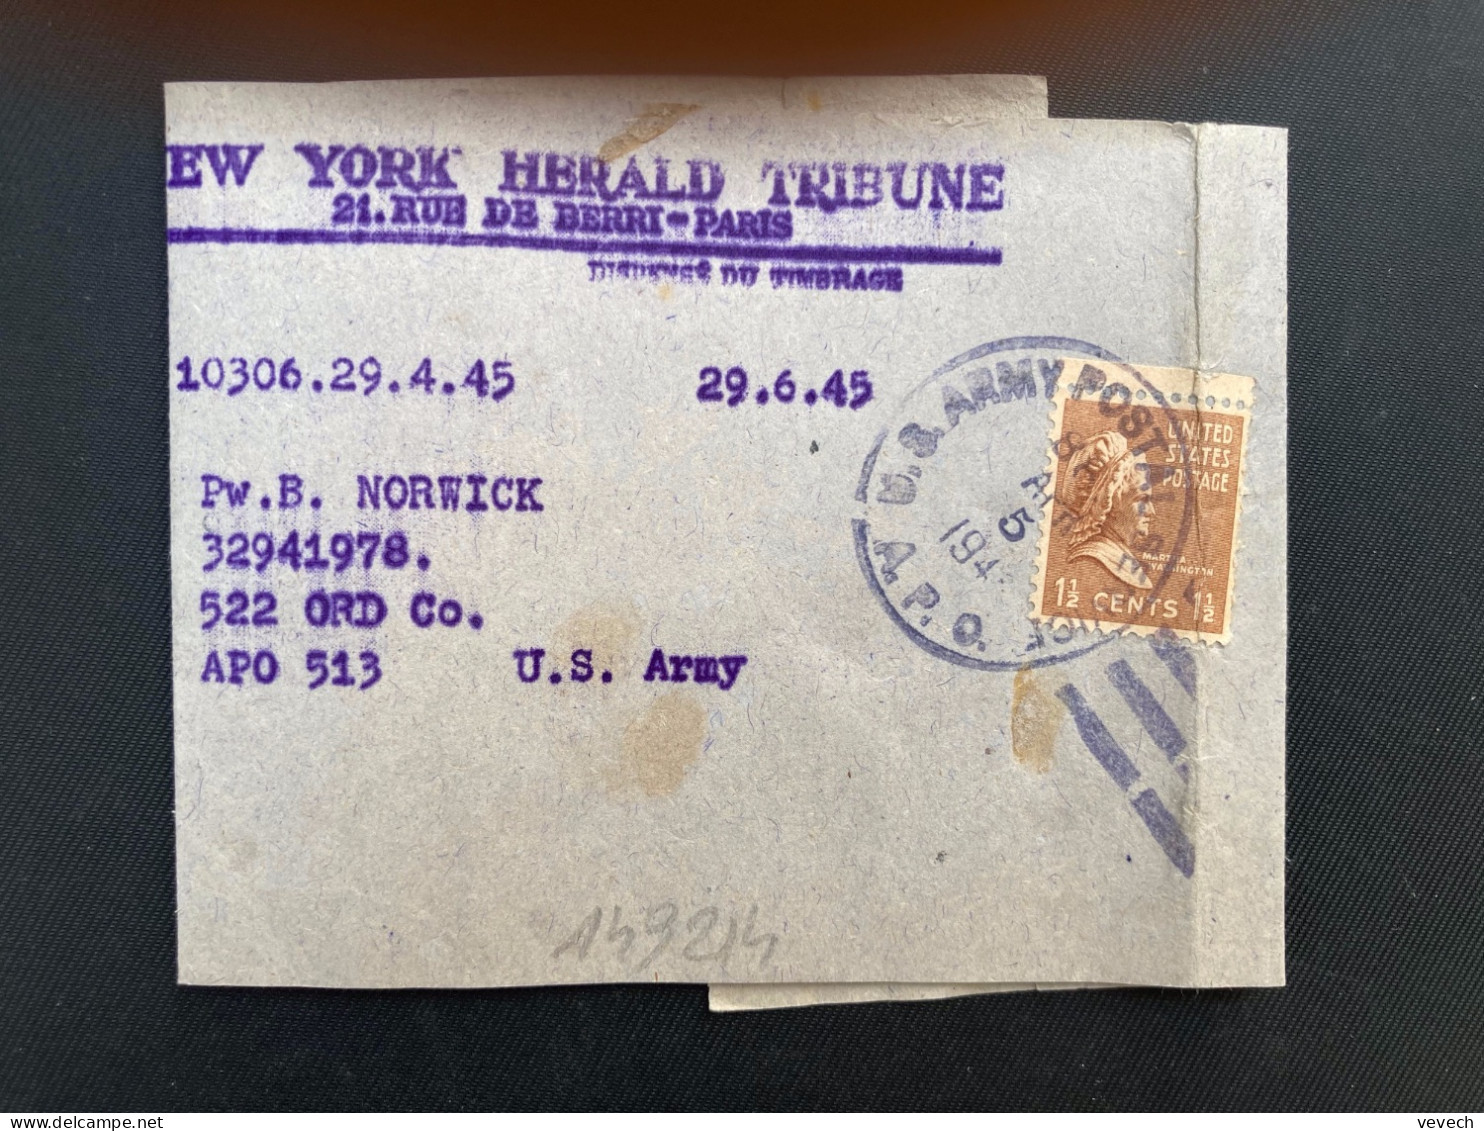 BJ NEW YORK HERALD TRIBUNE Pour APO 513 TP WASHINGTON 1 1/2c OBL.MEC.APR 5 1945 APO - Poststempel